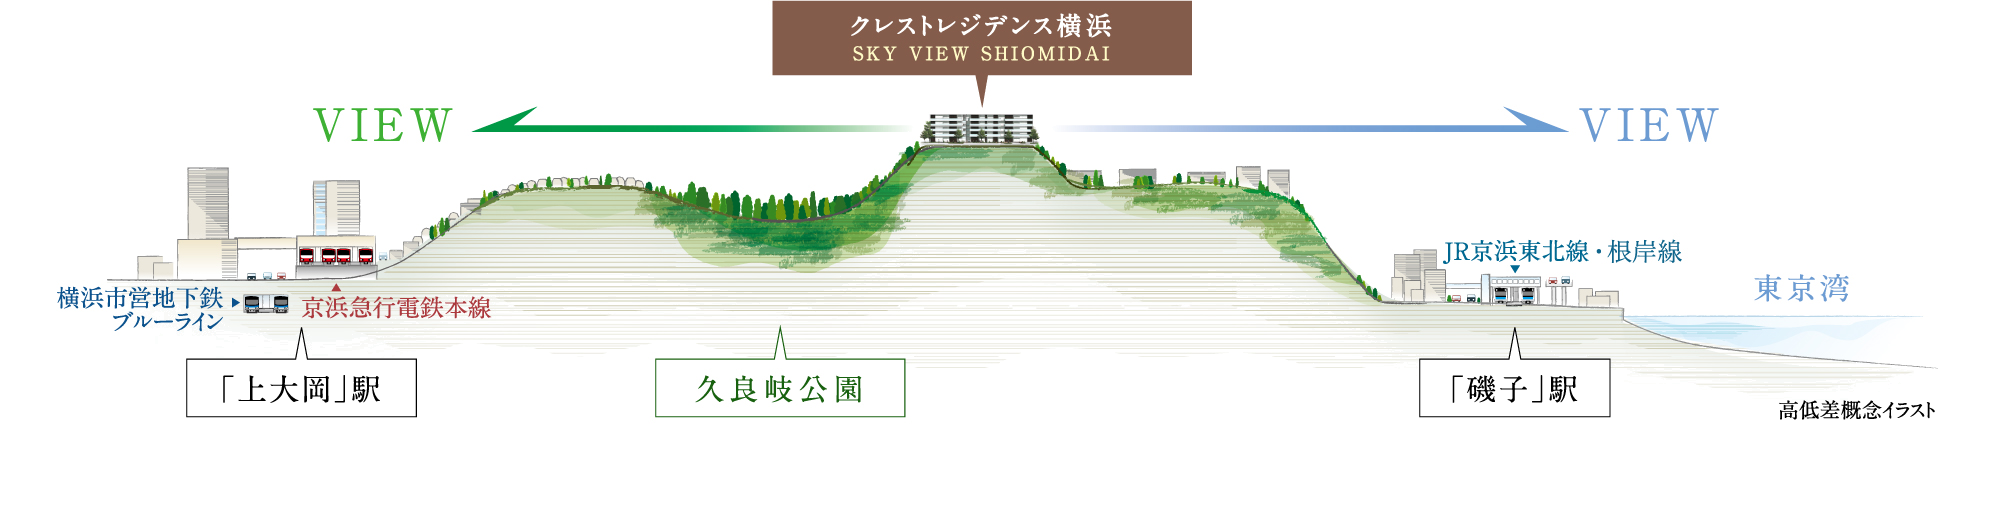 コンセプト 公式 クレストレジデンス横浜 Sky View Shiomidai 横浜駅直通８分 ドッグラン付新築分譲マンション